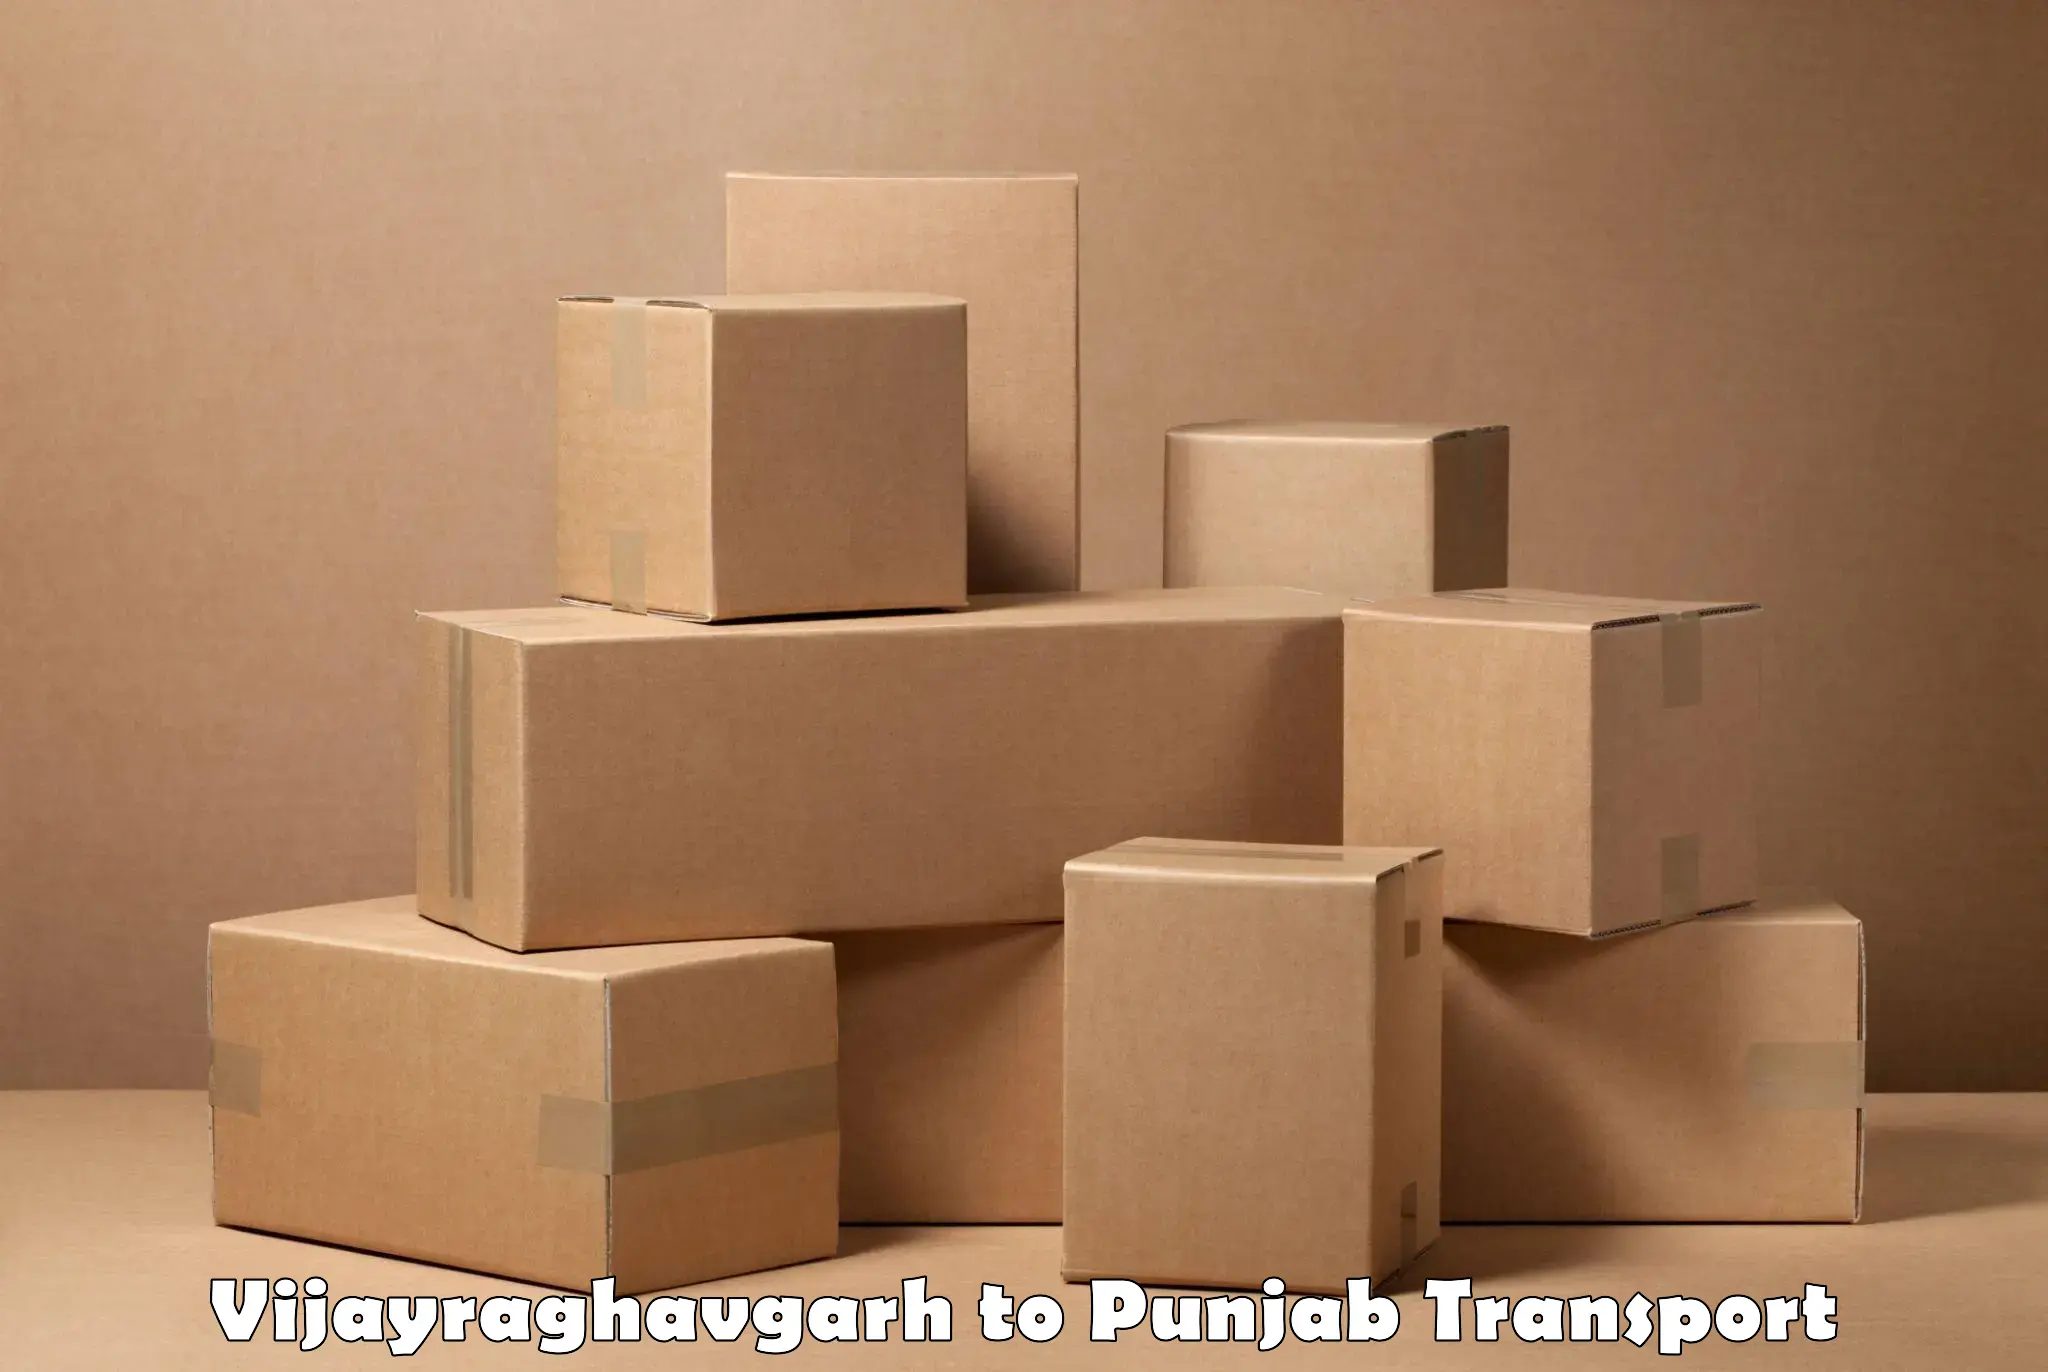 Container transportation services Vijayraghavgarh to Jalandhar